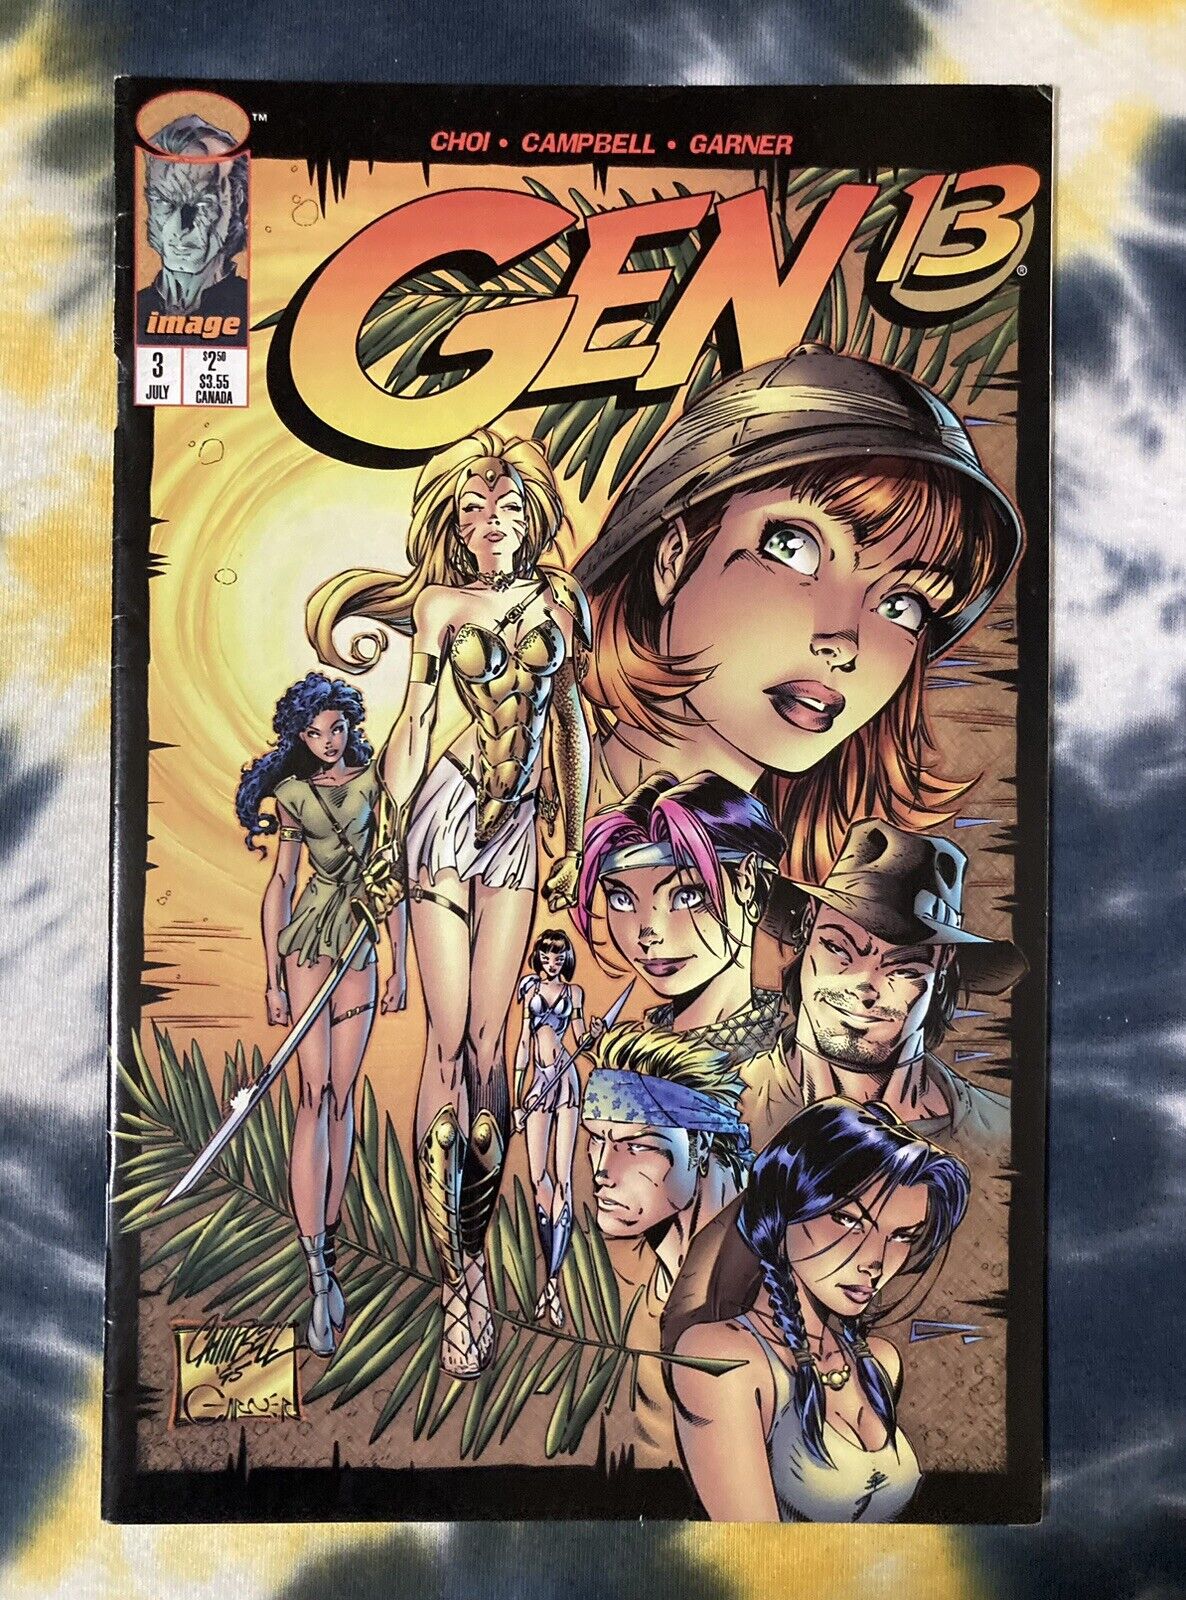 GEN 13 #3 Vol 2 (1995) - Image Comics / Cliffhanger / F